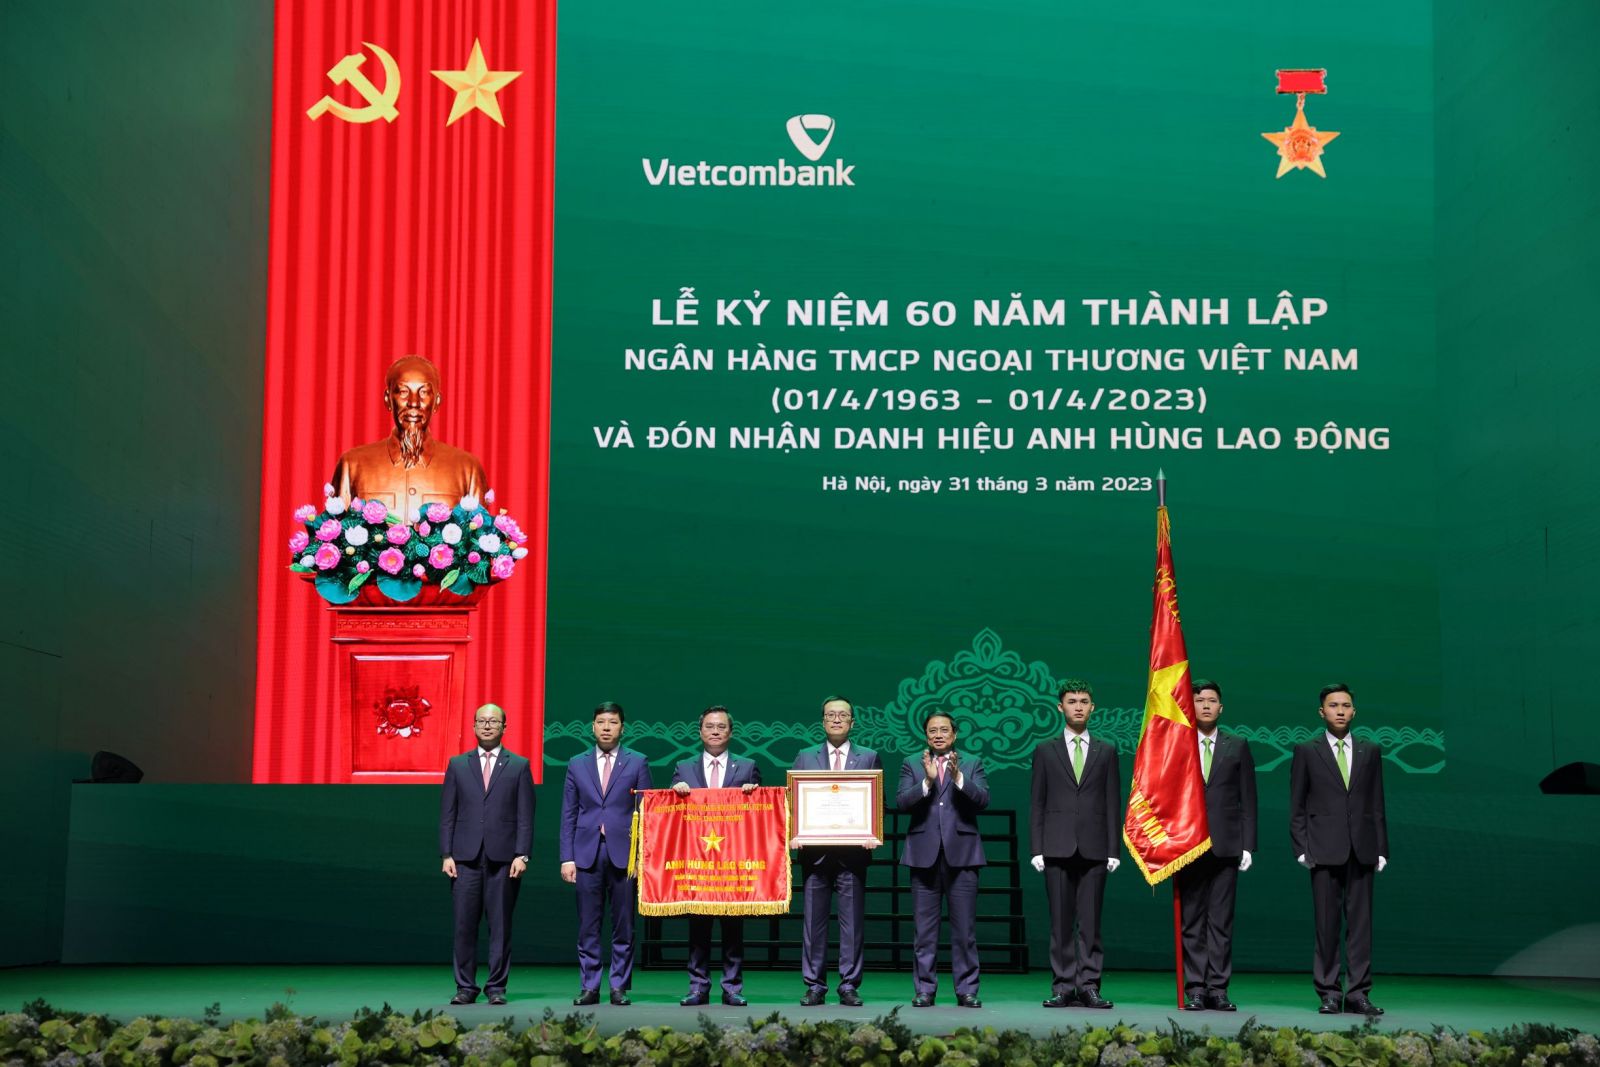 Với nhiều đóng góp lớn, hiệu quả cho kinh tế, xã hội đất nước, Vietcombank vinh dự được Đảng, Nhà nước trao tăng danh hiệu Anh hùng lao động nhân dịp kỷ niệm 60 năm thành lập (01/04/2023)